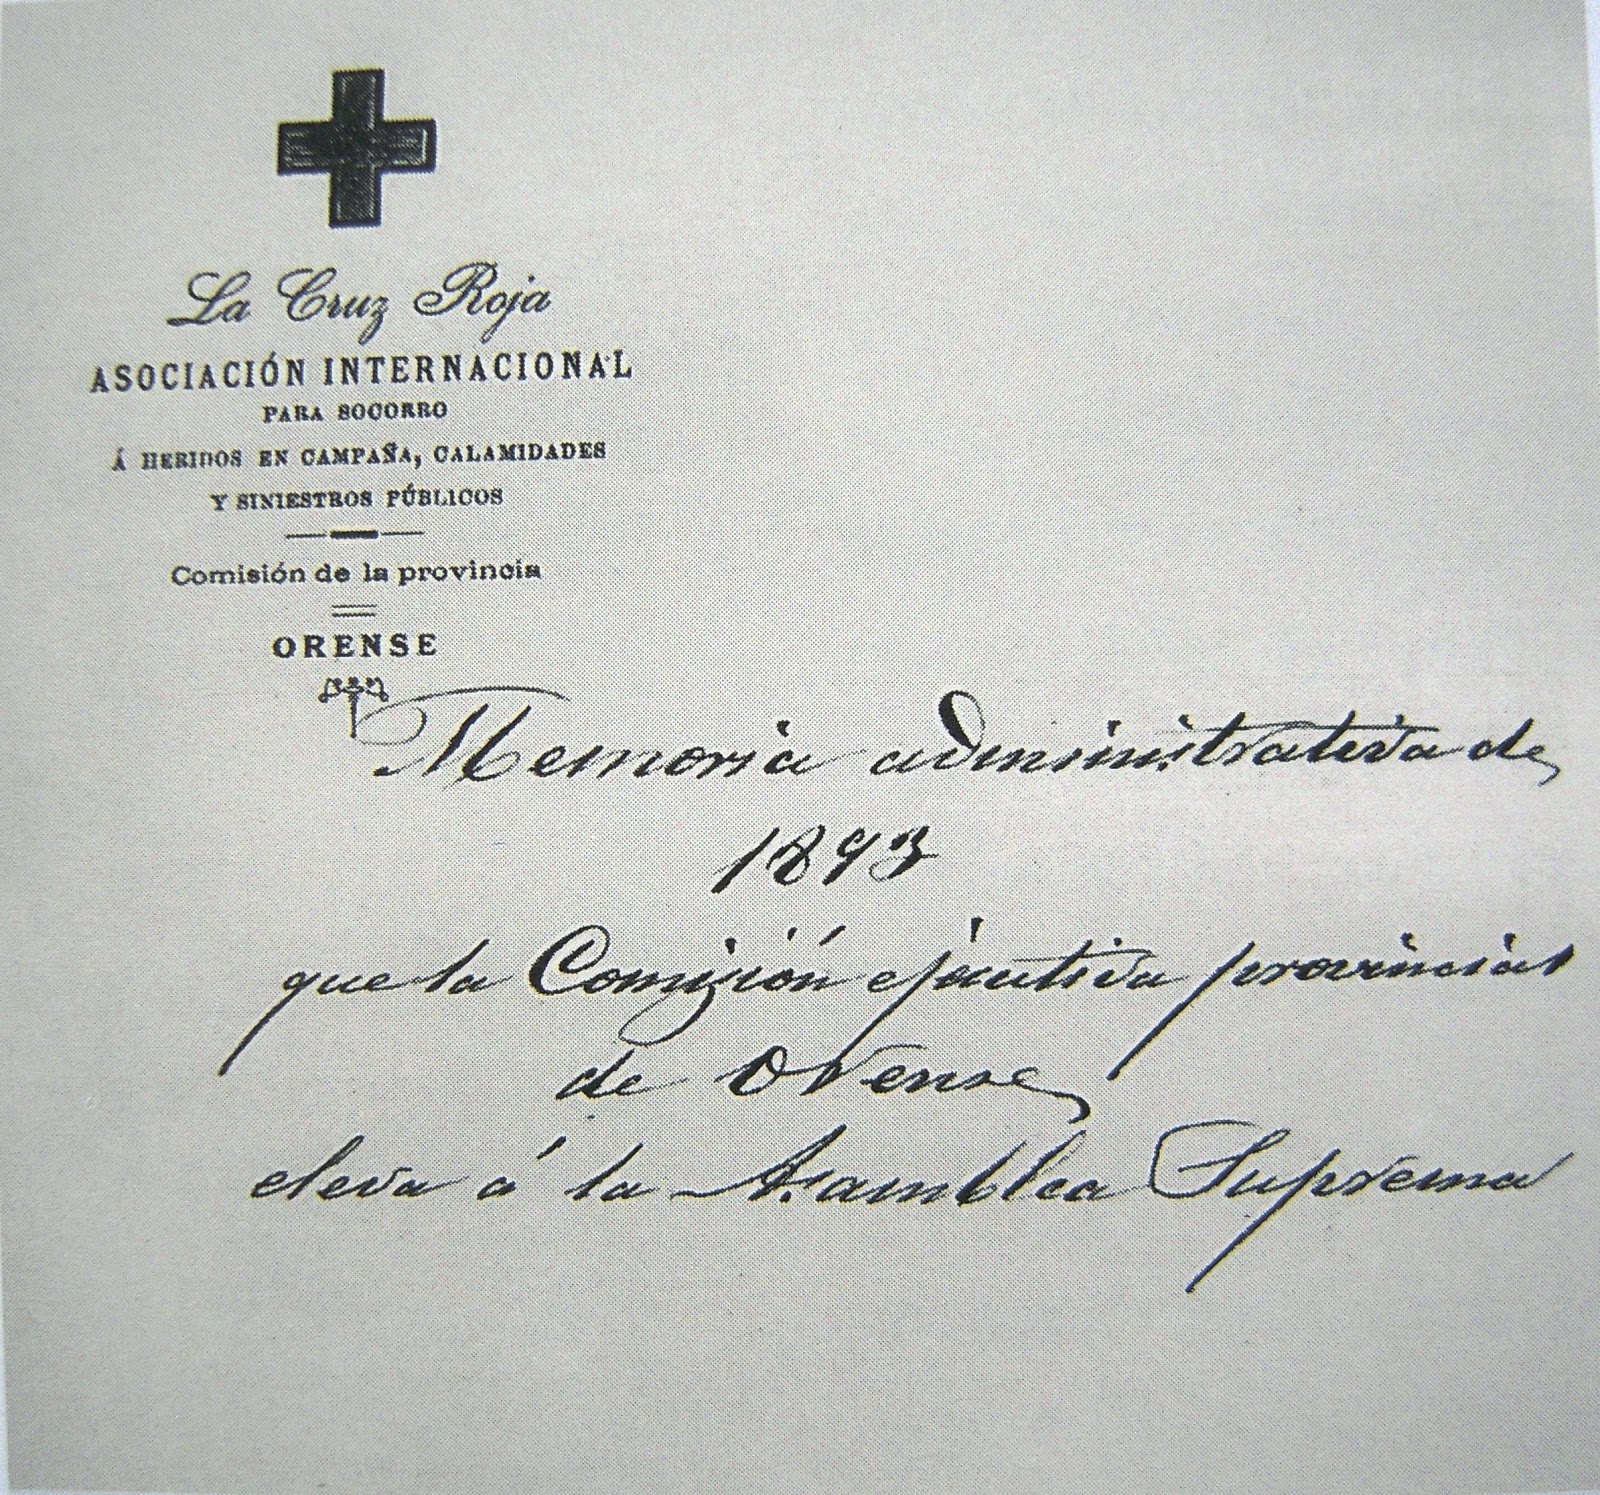 DIARIO DE UN MÉDICO DE GUARDIA: La Cruz Roja en Ourense desde 1893 (8